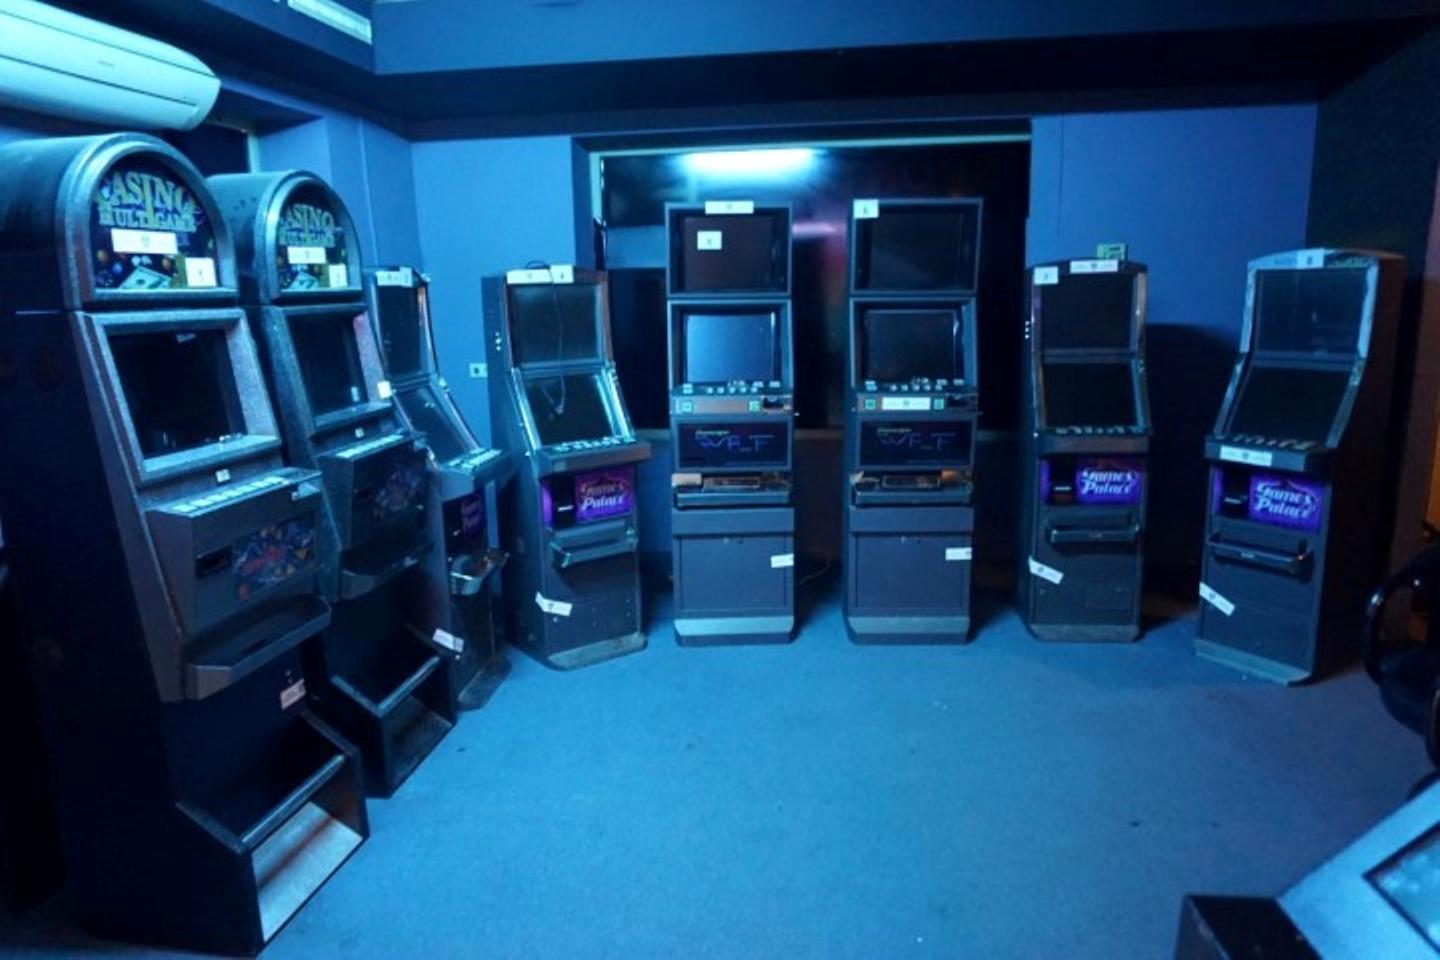 Spielautomaten in Hinterzimmer in blauem Licht